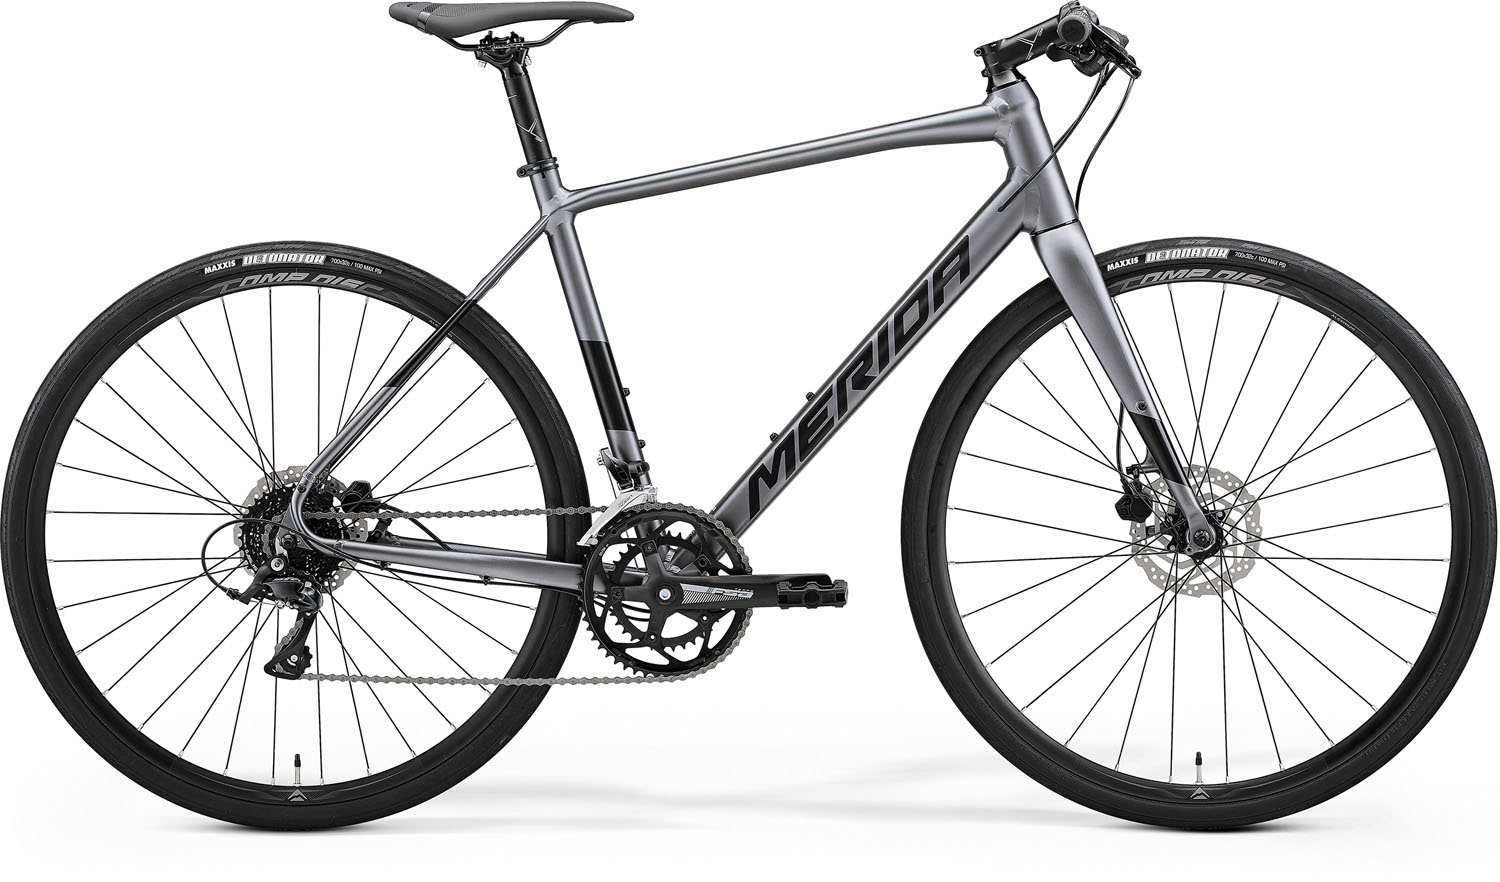 Bicicleta de Sosea Merida Speeder 200 Argintiu/Negru 2022